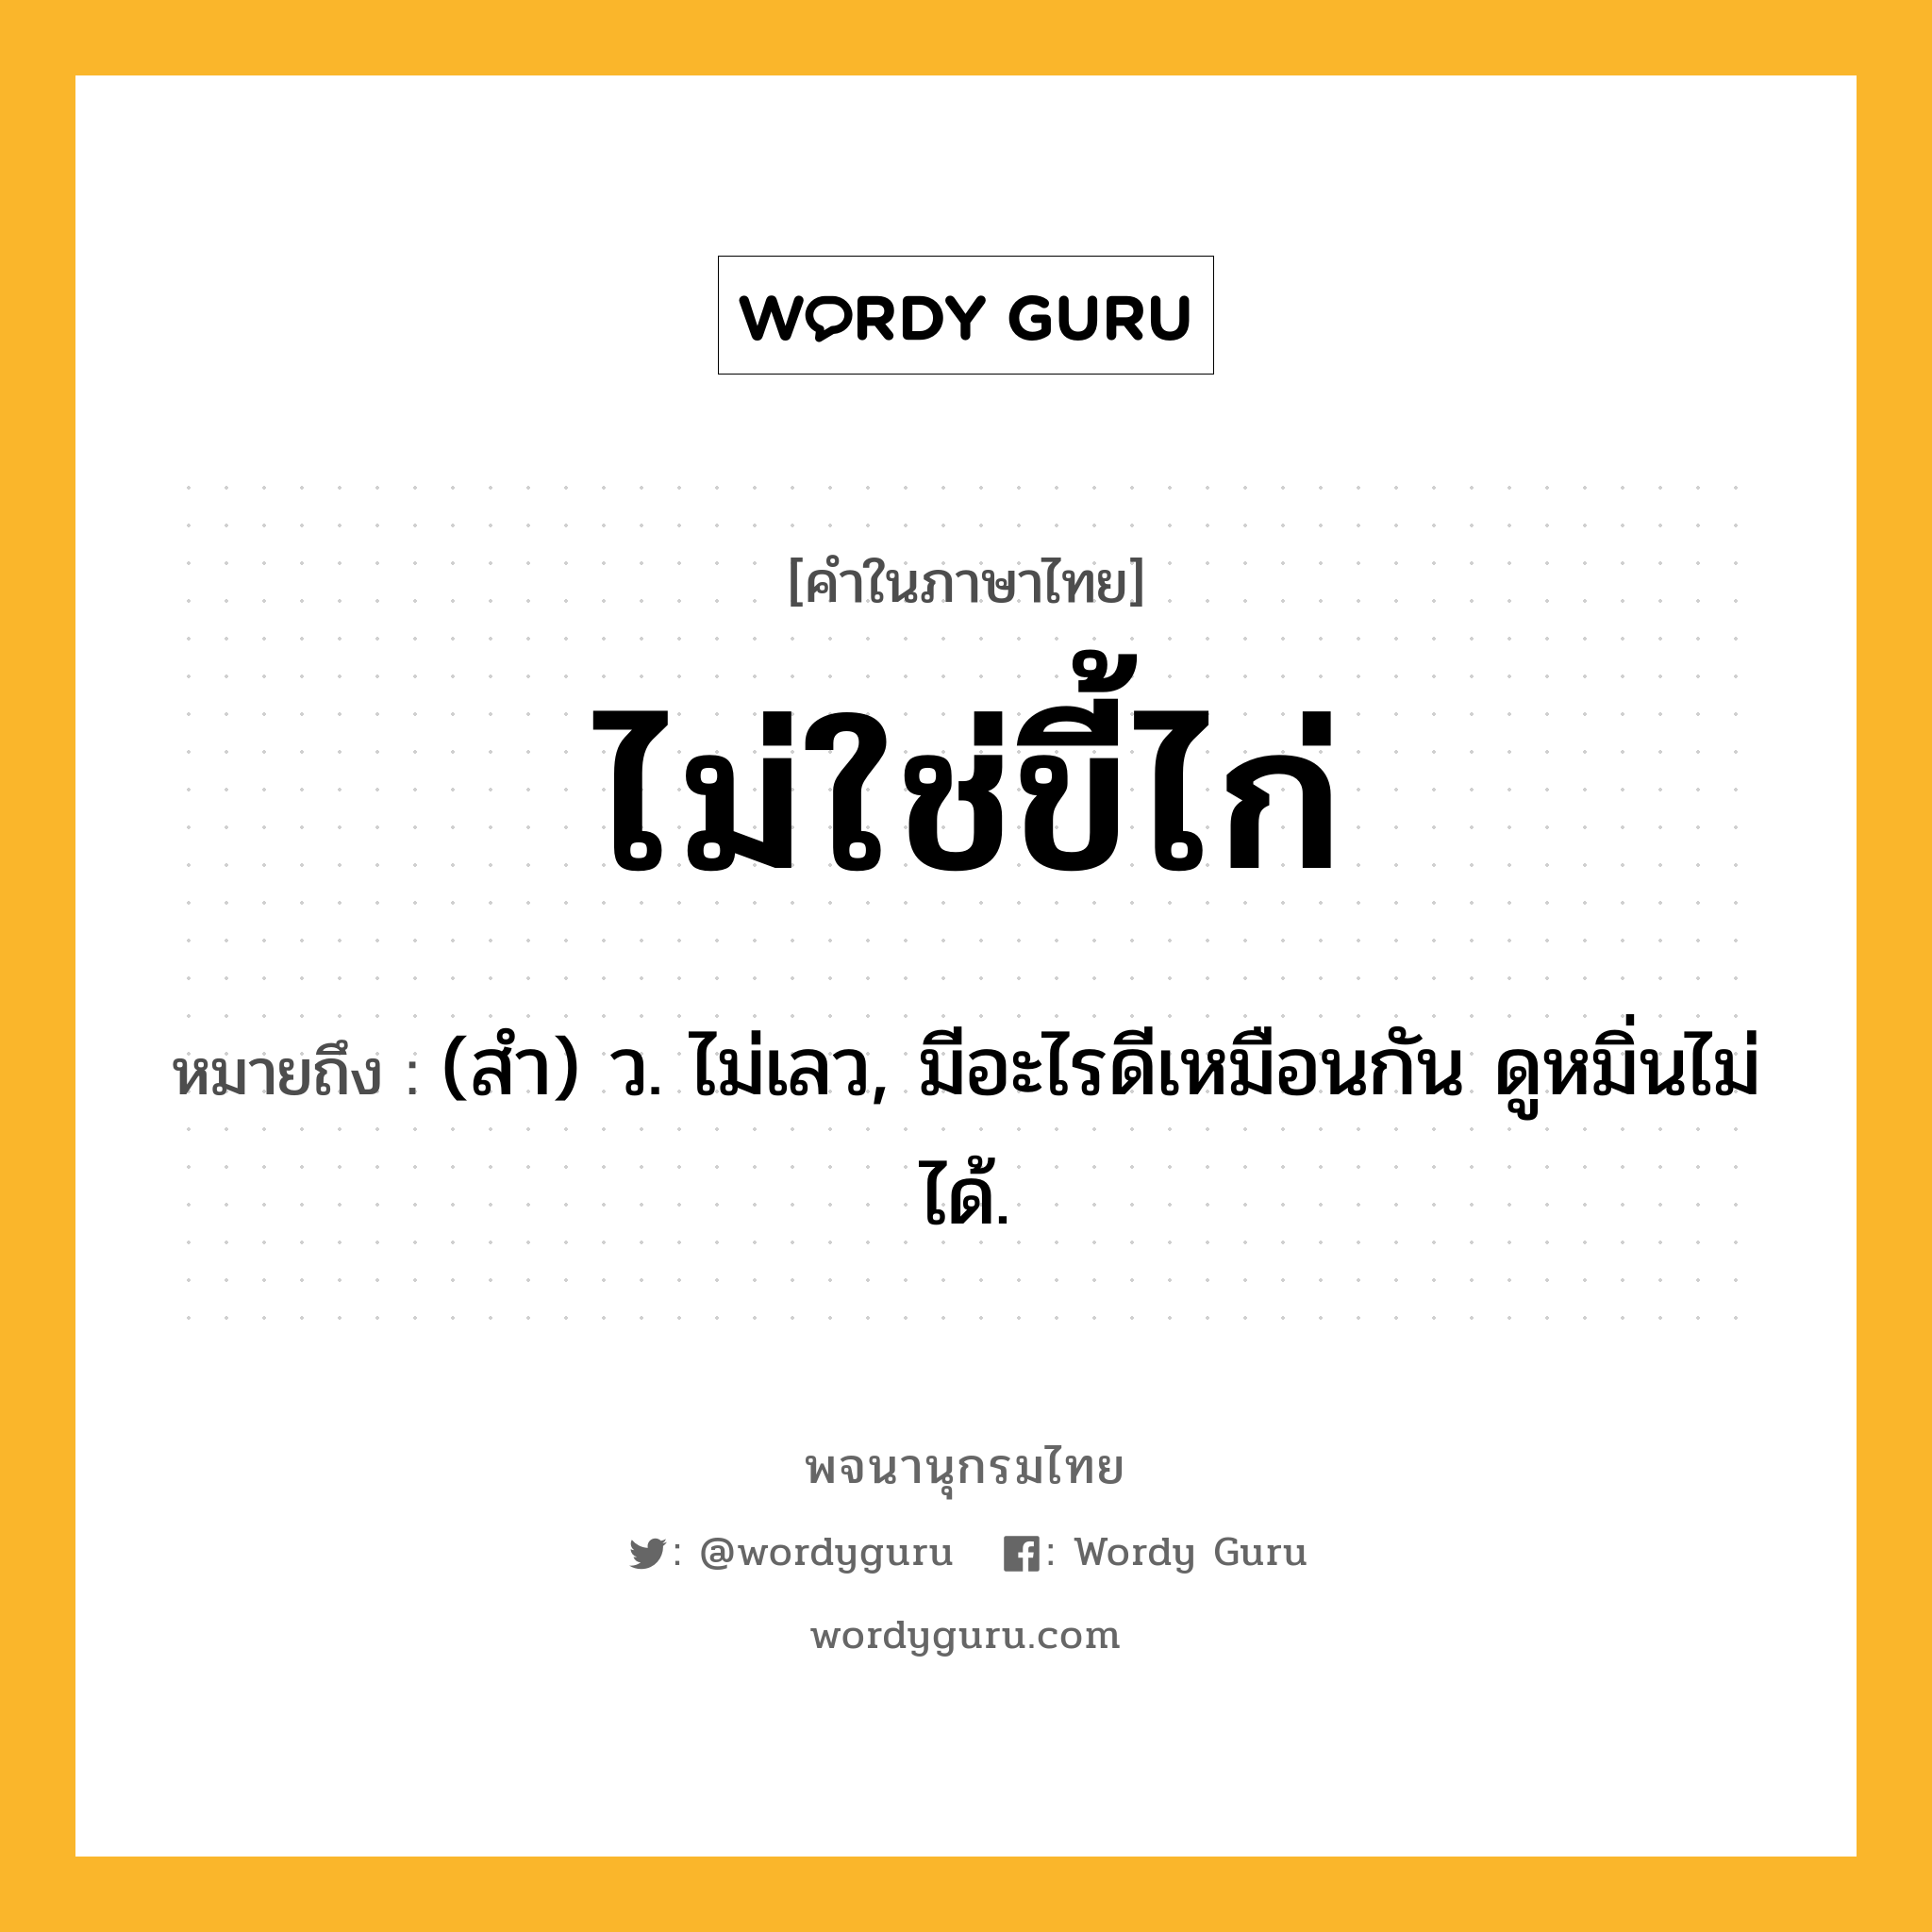 ไม่ใช่ขี้ไก่ ความหมาย หมายถึงอะไร?, คำในภาษาไทย ไม่ใช่ขี้ไก่ หมายถึง (สํา) ว. ไม่เลว, มีอะไรดีเหมือนกัน ดูหมิ่นไม่ได้.